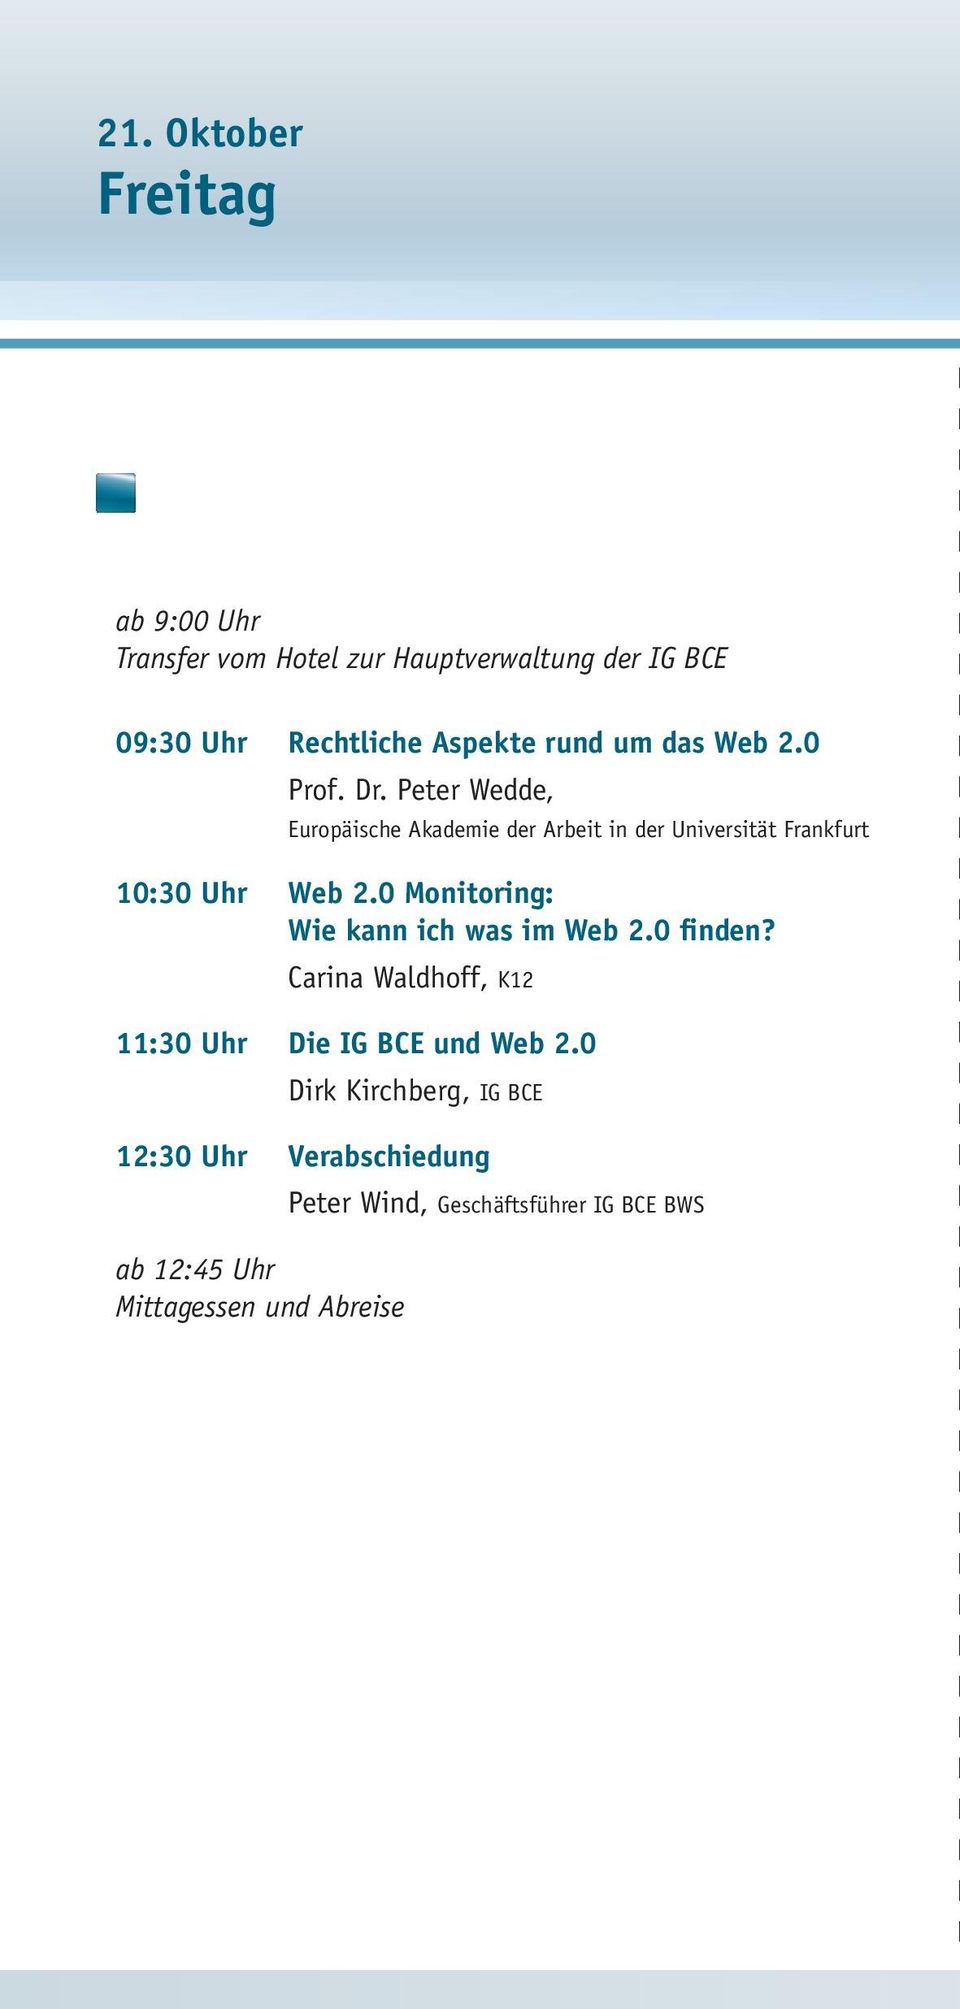 Peter Wedde, Europäische Akademie der Arbeit in der Universität Frankfurt 10:30 Uhr Web 2.